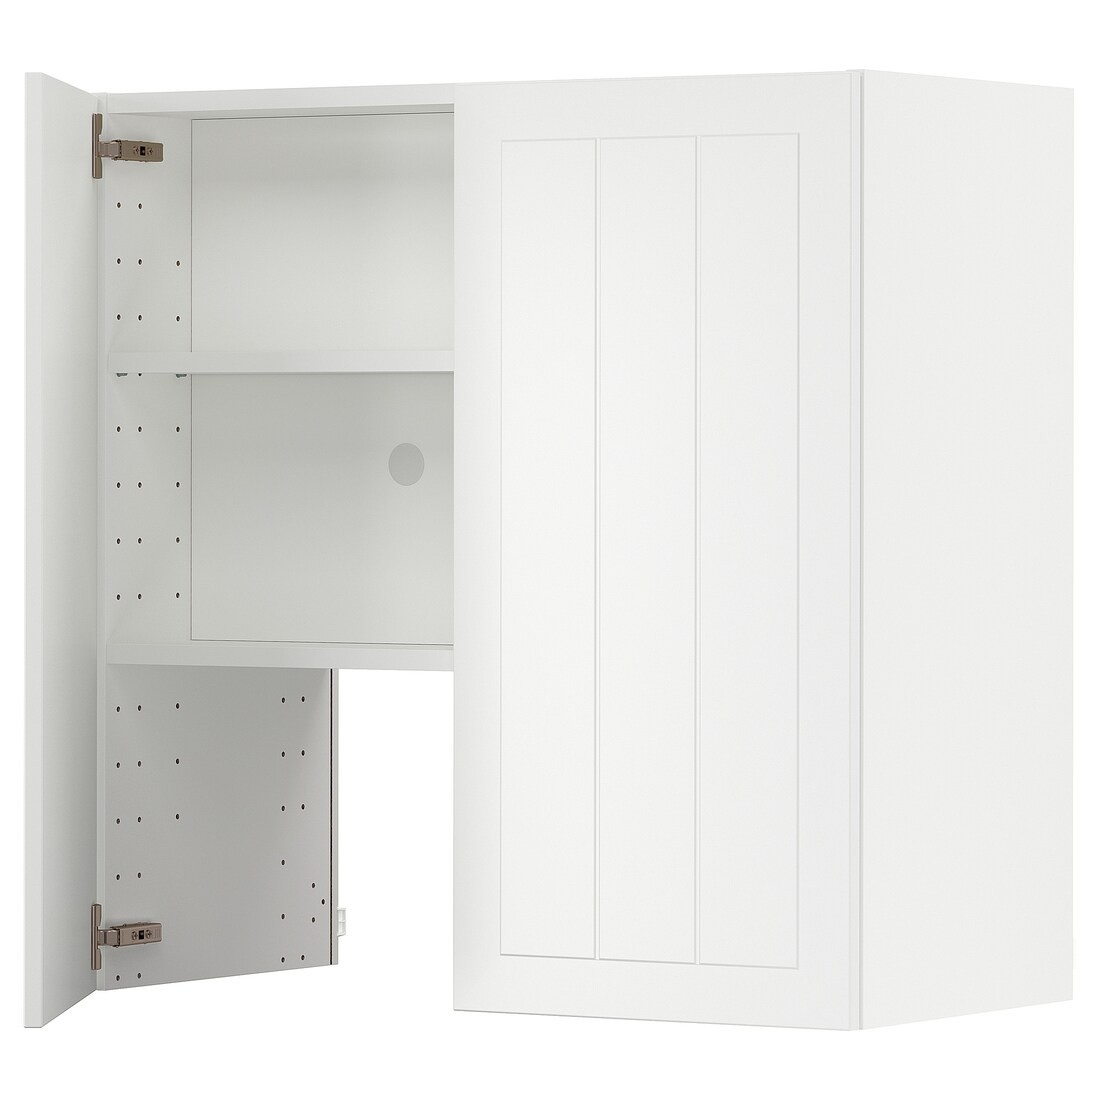 IKEA METOD МЕТОД Навісна шафа з полицею / дверцями, білий / Stensund білий, 80x80 см 89504356 895.043.56